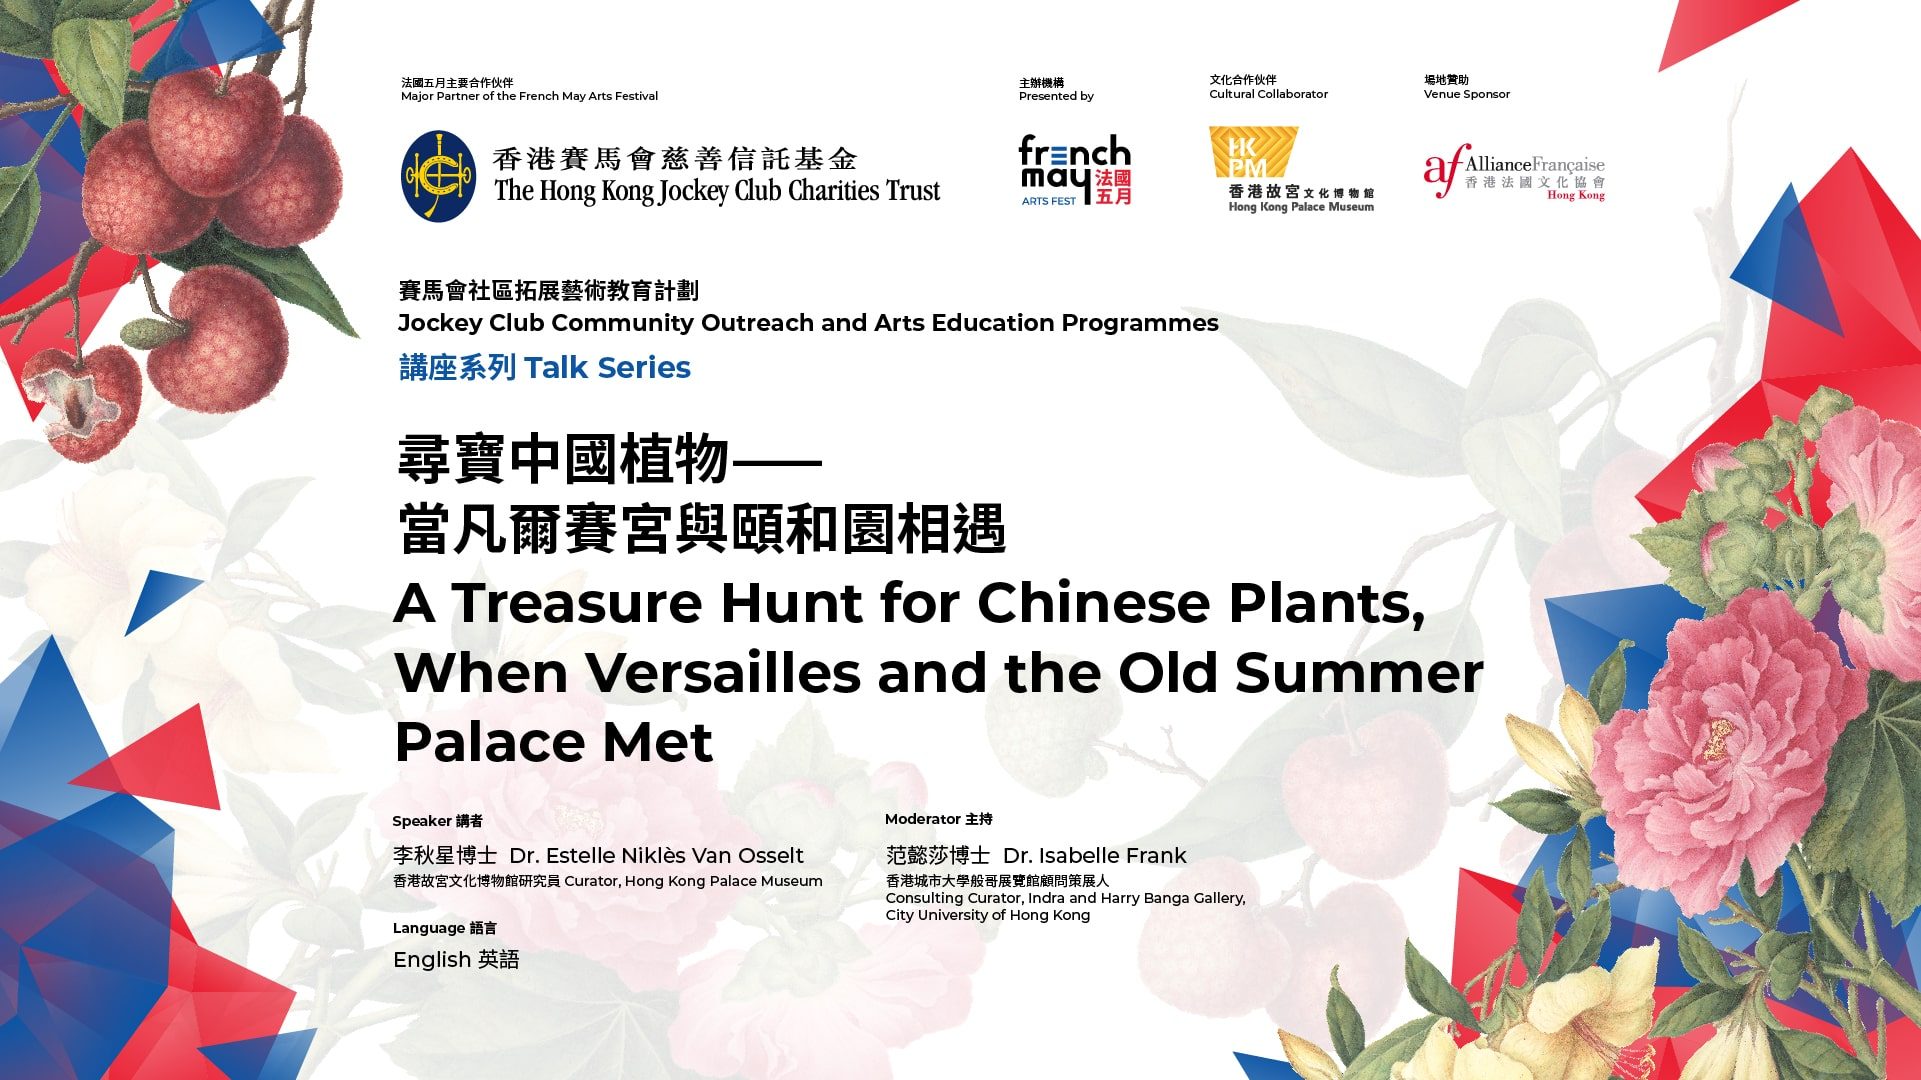 中國植物 法國五月藝術節 法國文化協會